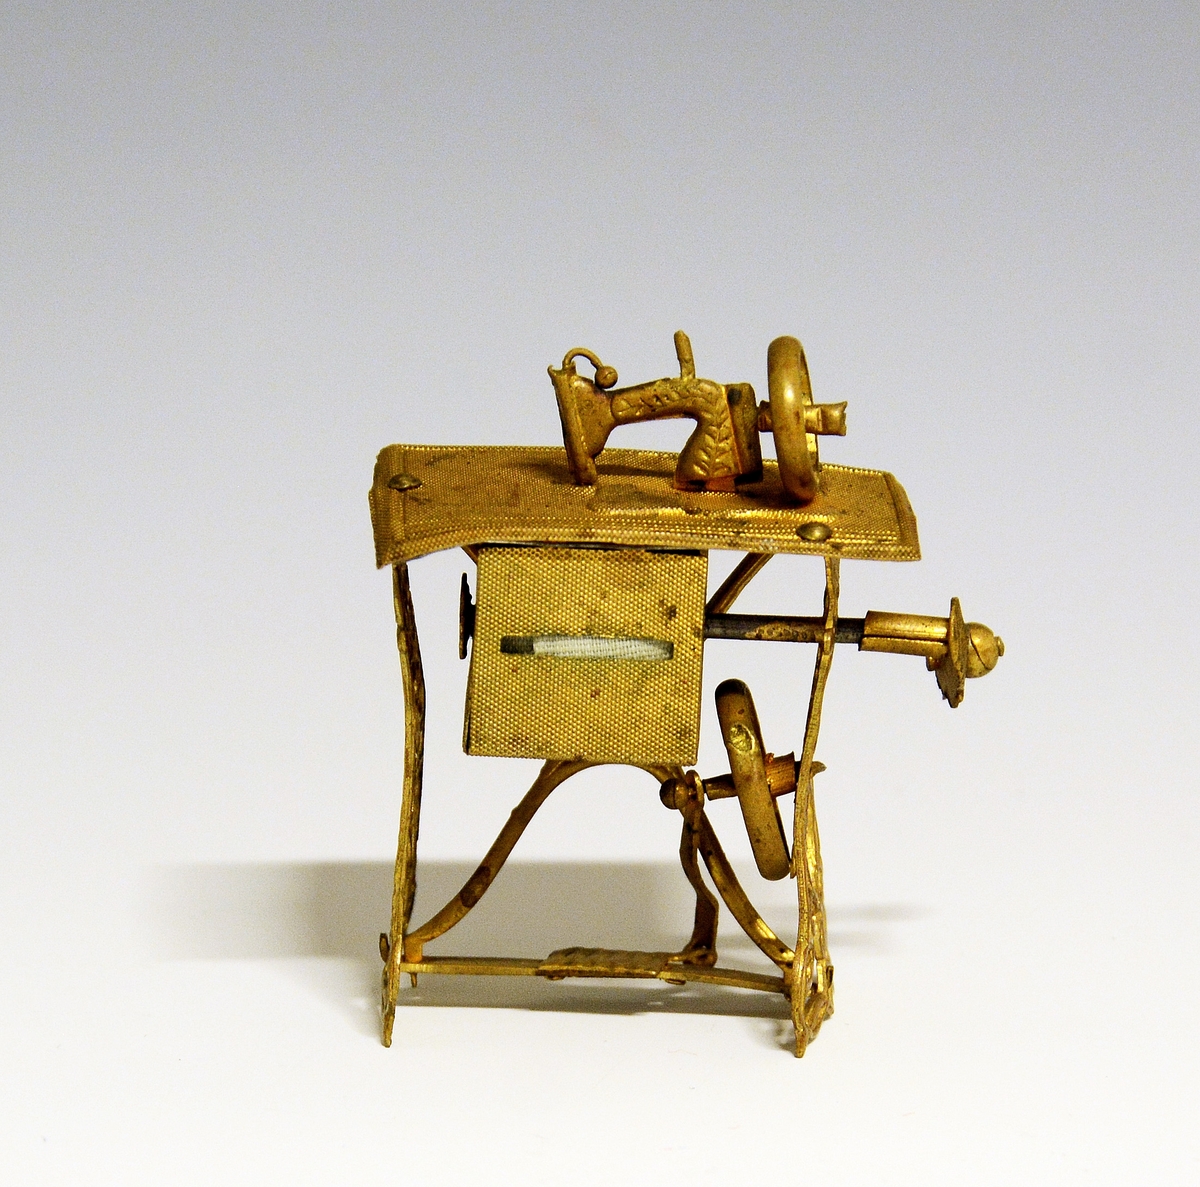 Liten bordsymaskin i miniatyr. Utført i gult metall, noe skjev i enkeltdelene.